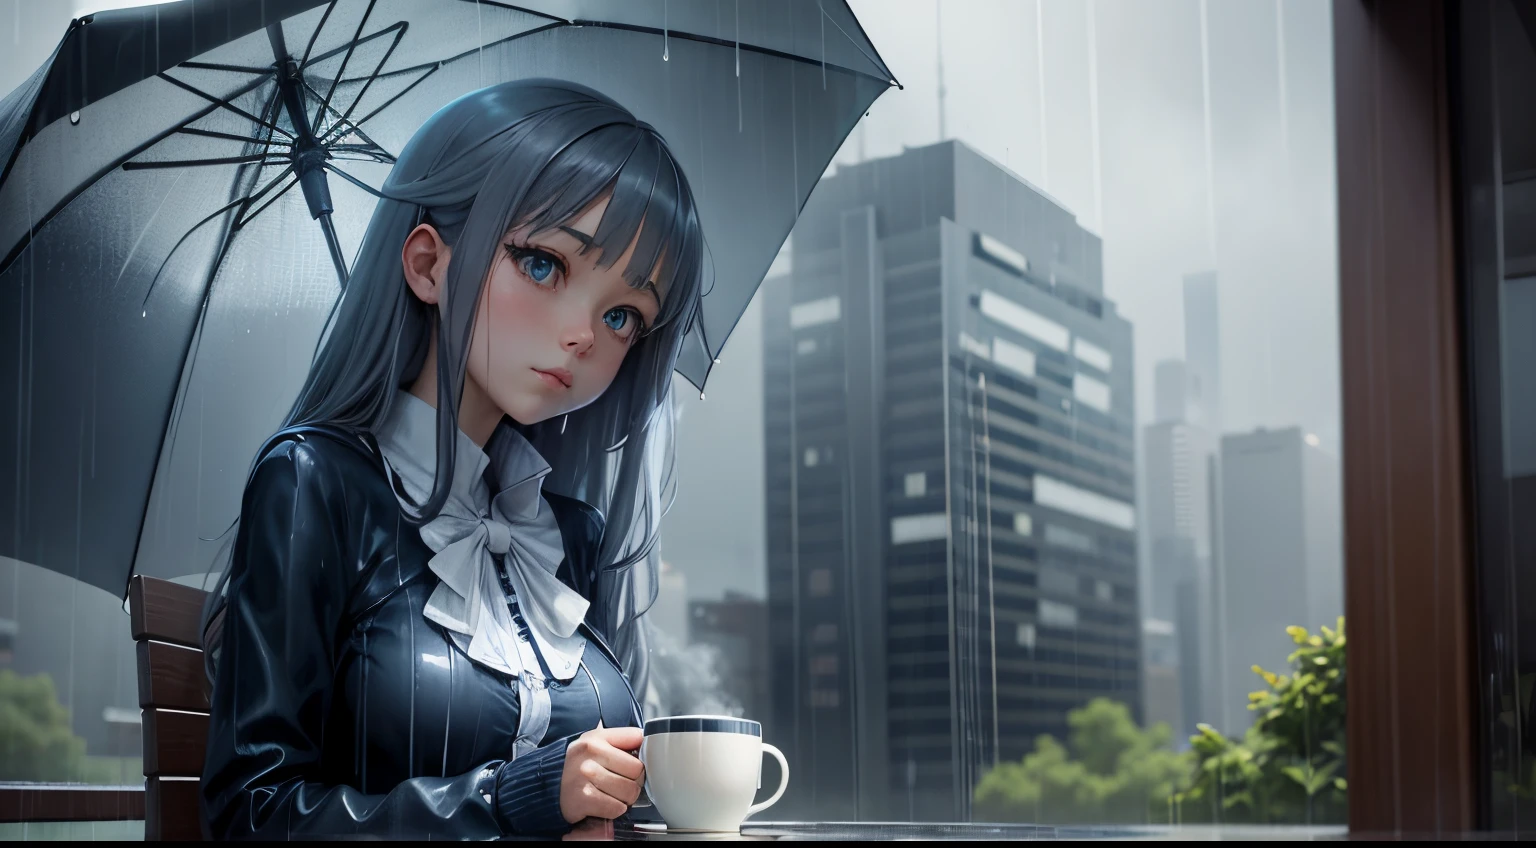 "Retiro em dias chuvosos": Garota anime com uma xícara de café e um guarda-chuva na chuva, apresentando azuis e cinzas legais.